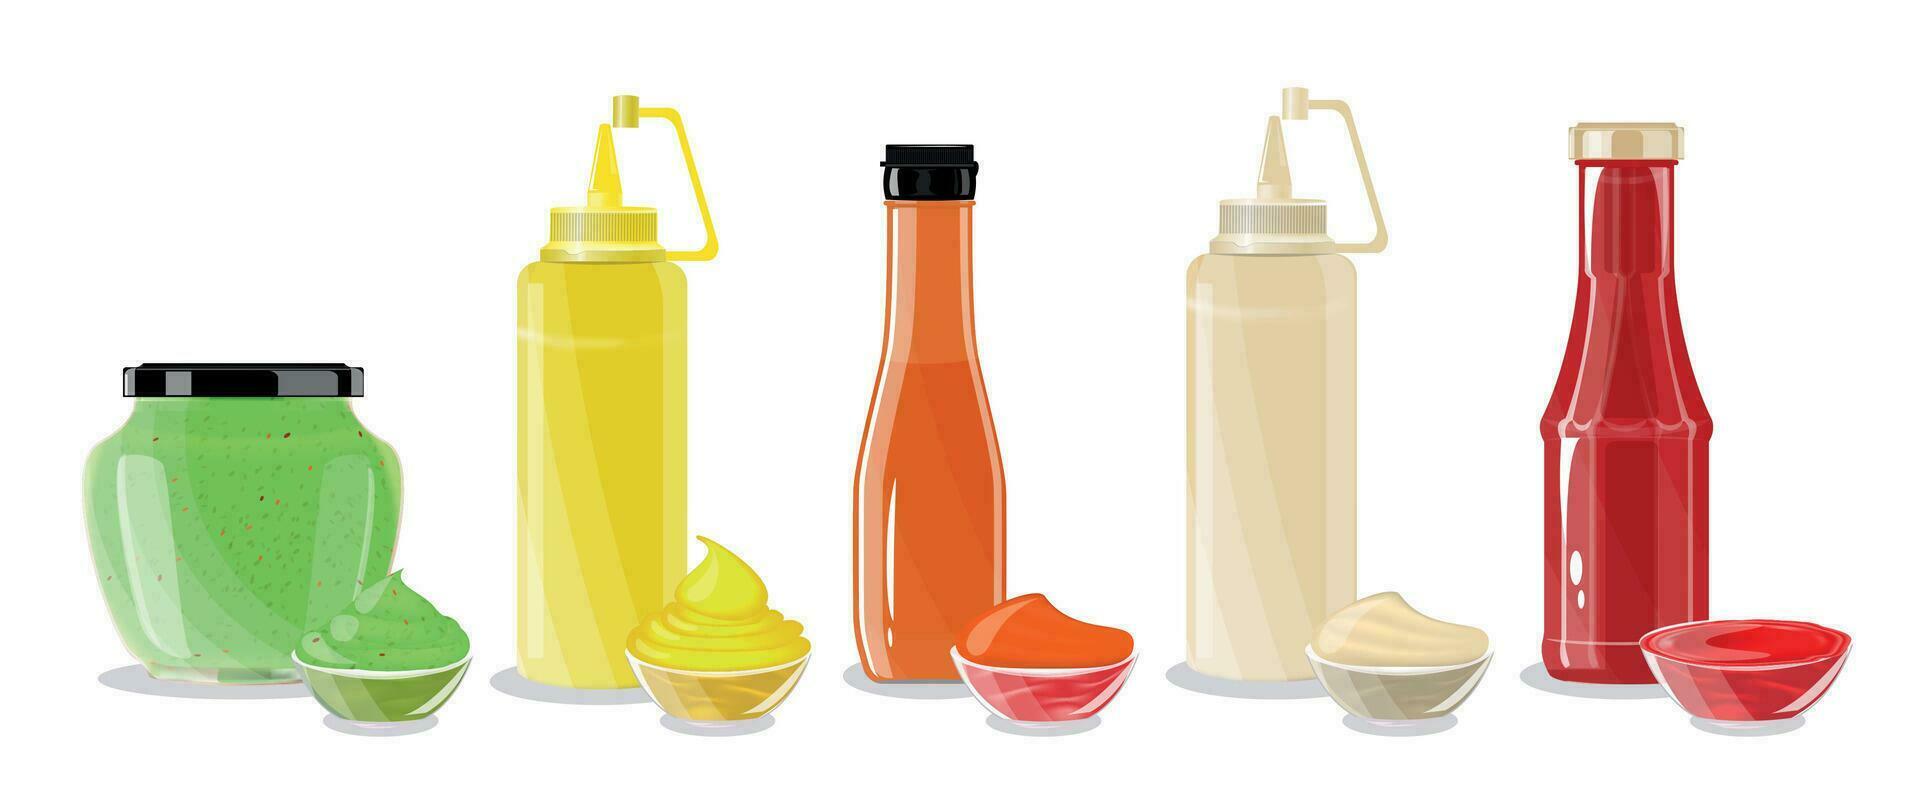 Sauce Bottles Set vector